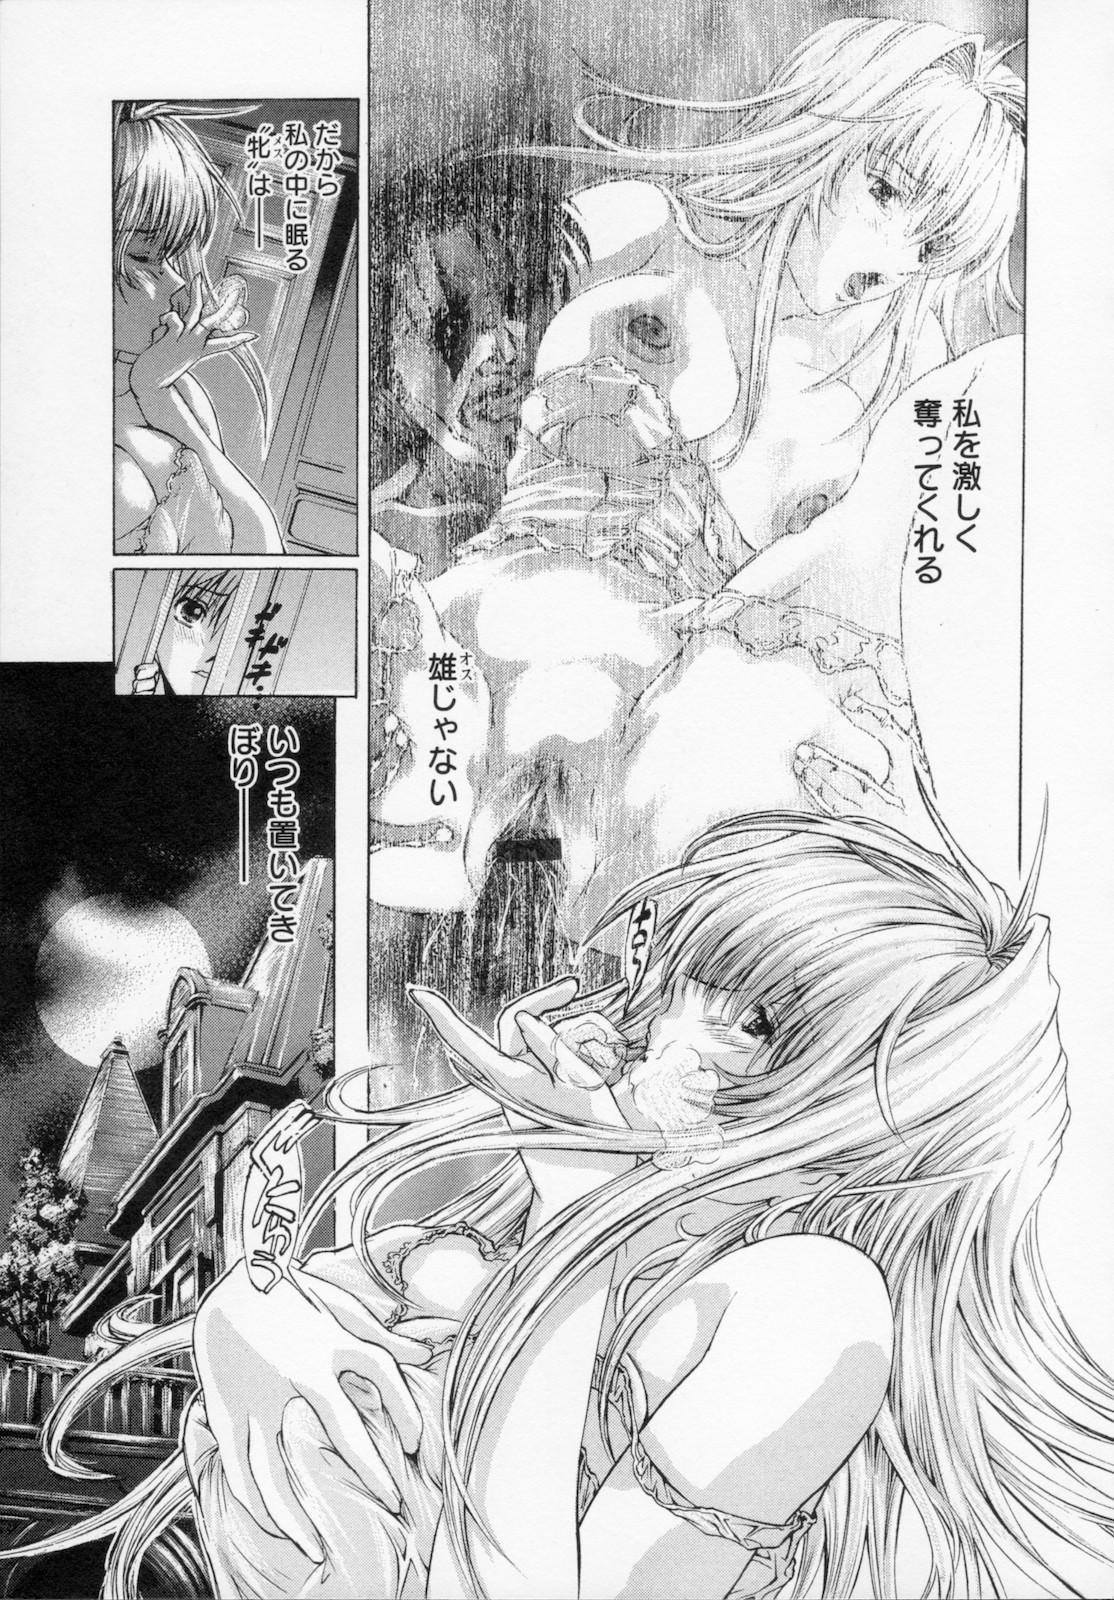 Watashi wa ryoujyoku daisuki na henatai mangaka desu 92